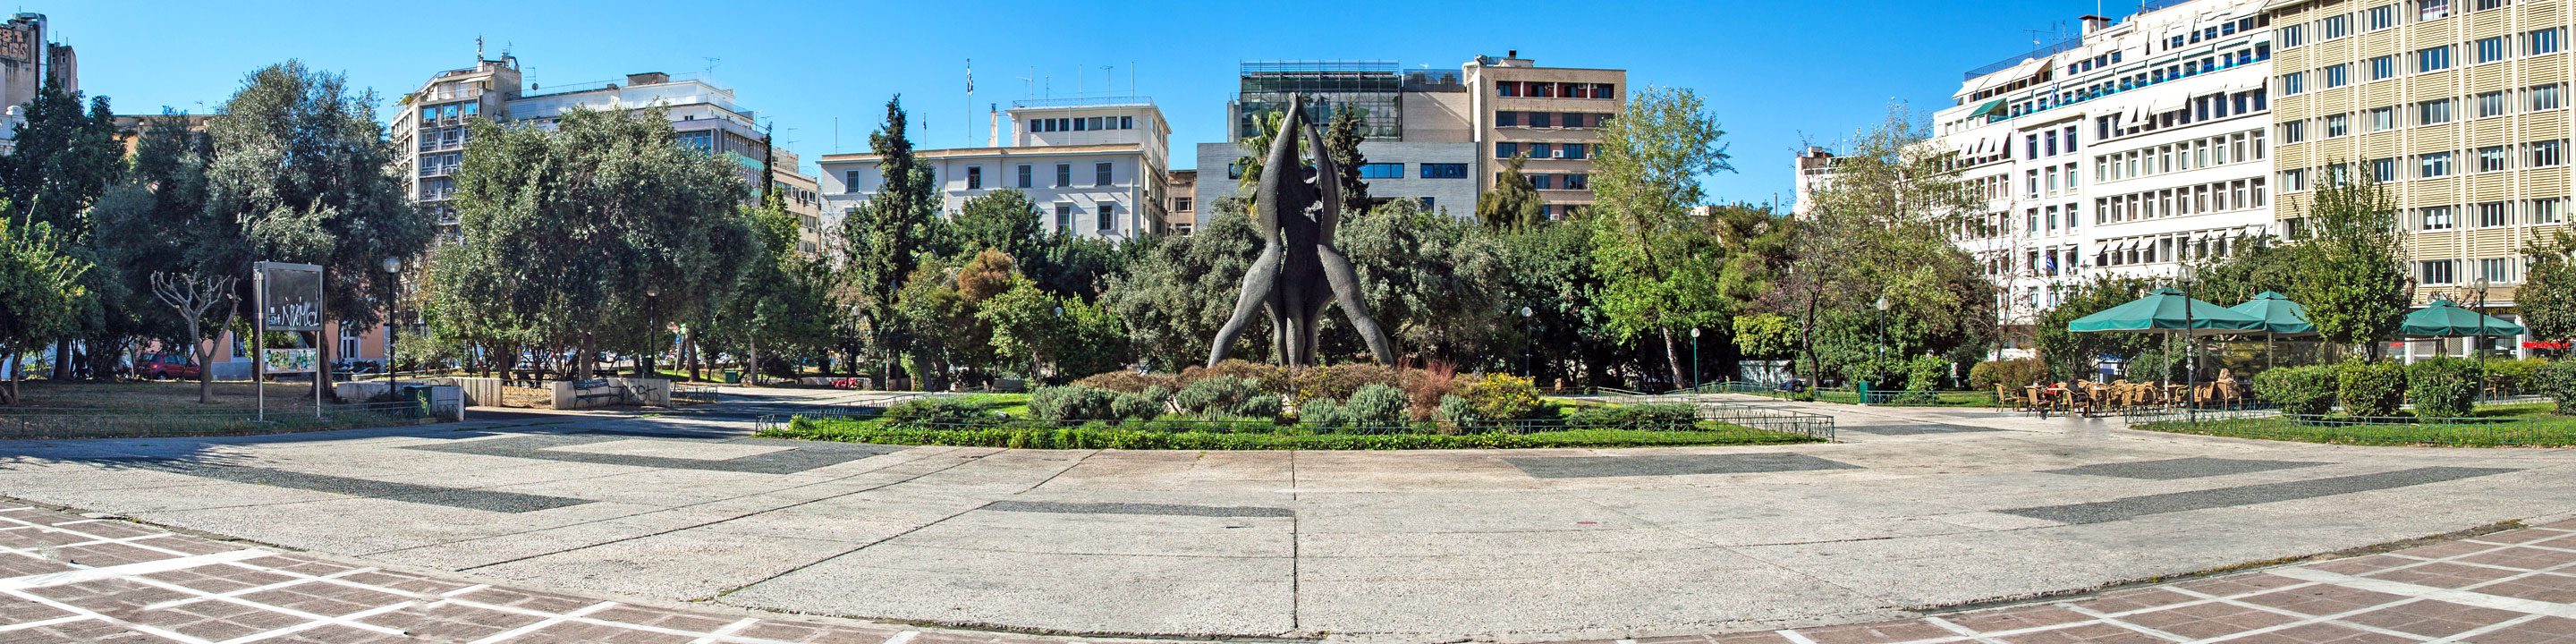 Klafthmonos Square in Athens